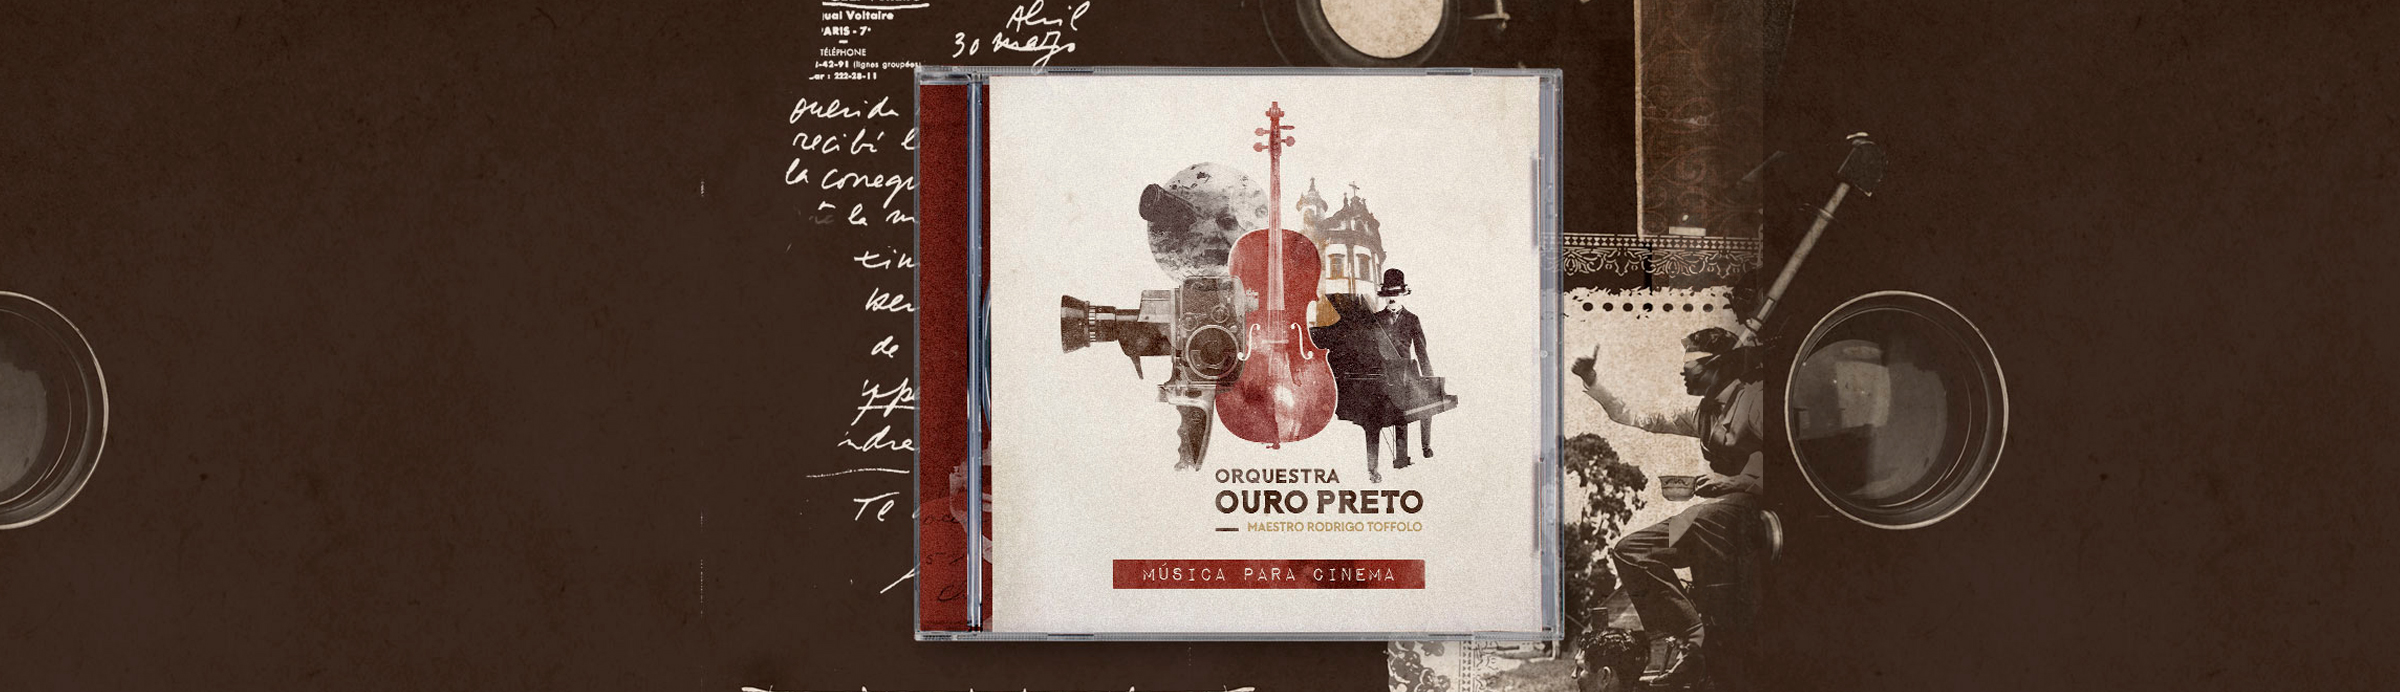 Orquestra de Ouro Preto passa por thriller policial em “Música para cinema”